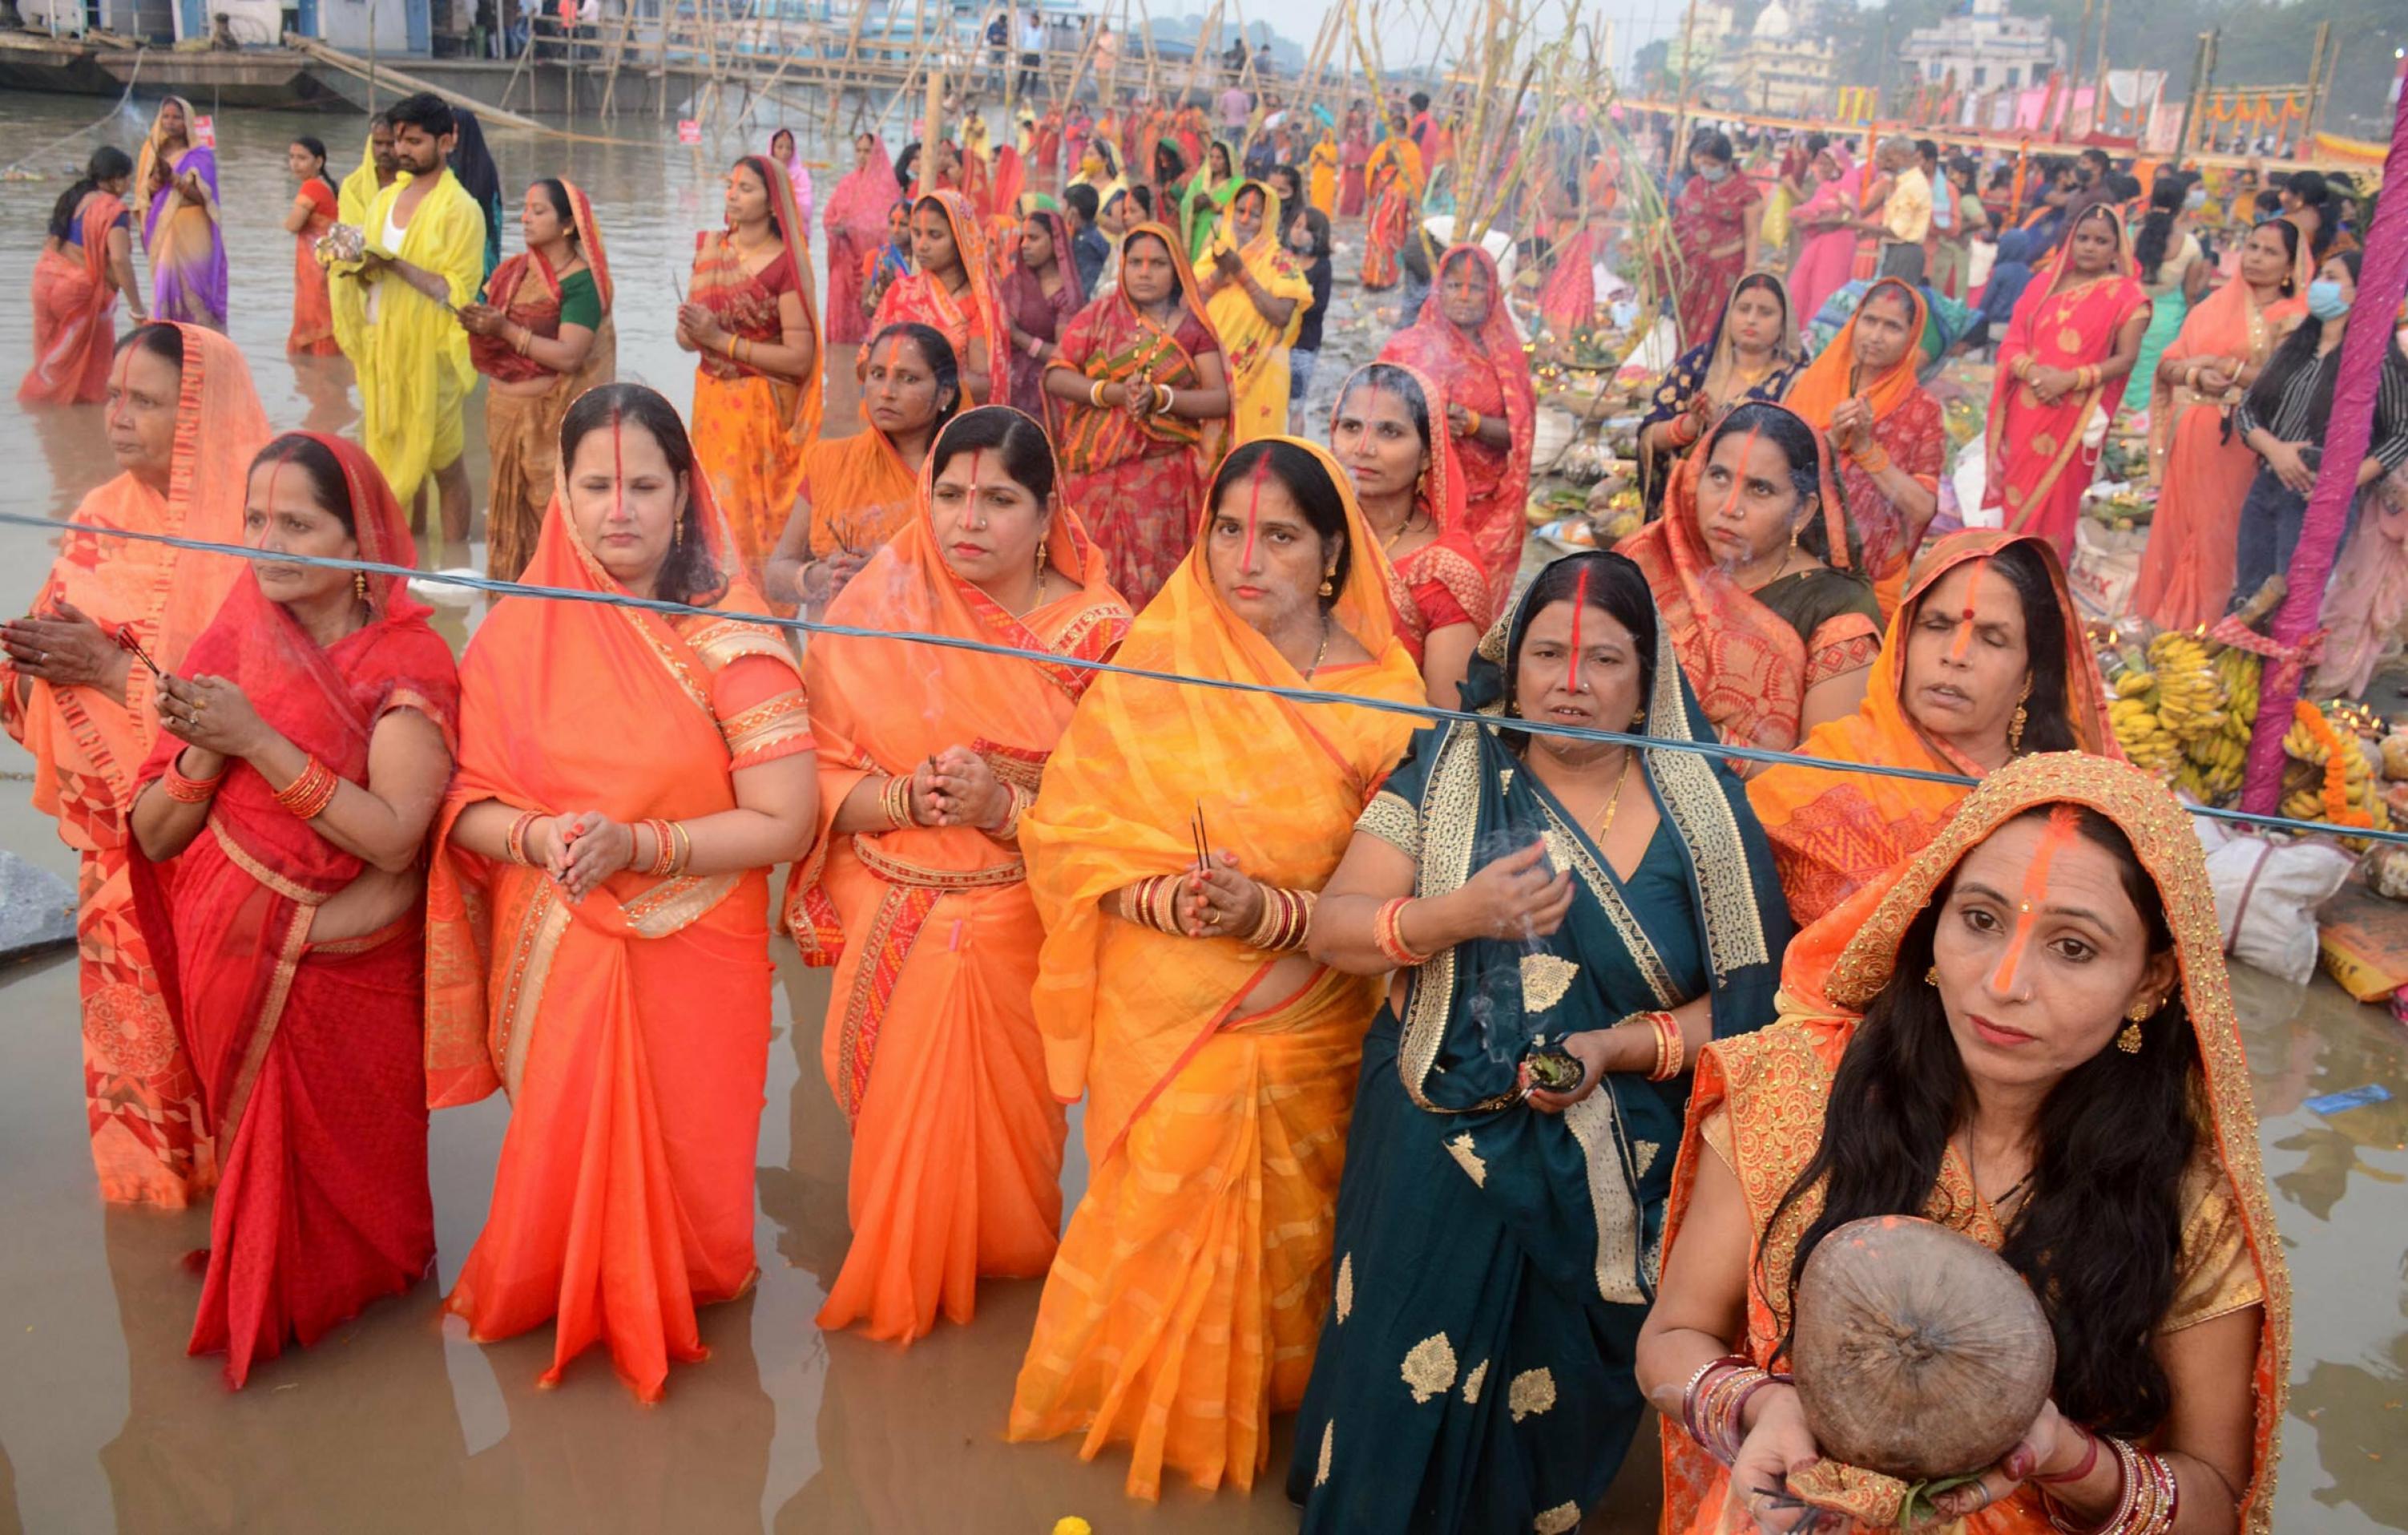 Frauen in orangefarbener und roter traditioneller Kleidung stehen im Wasser des Brahmaputra